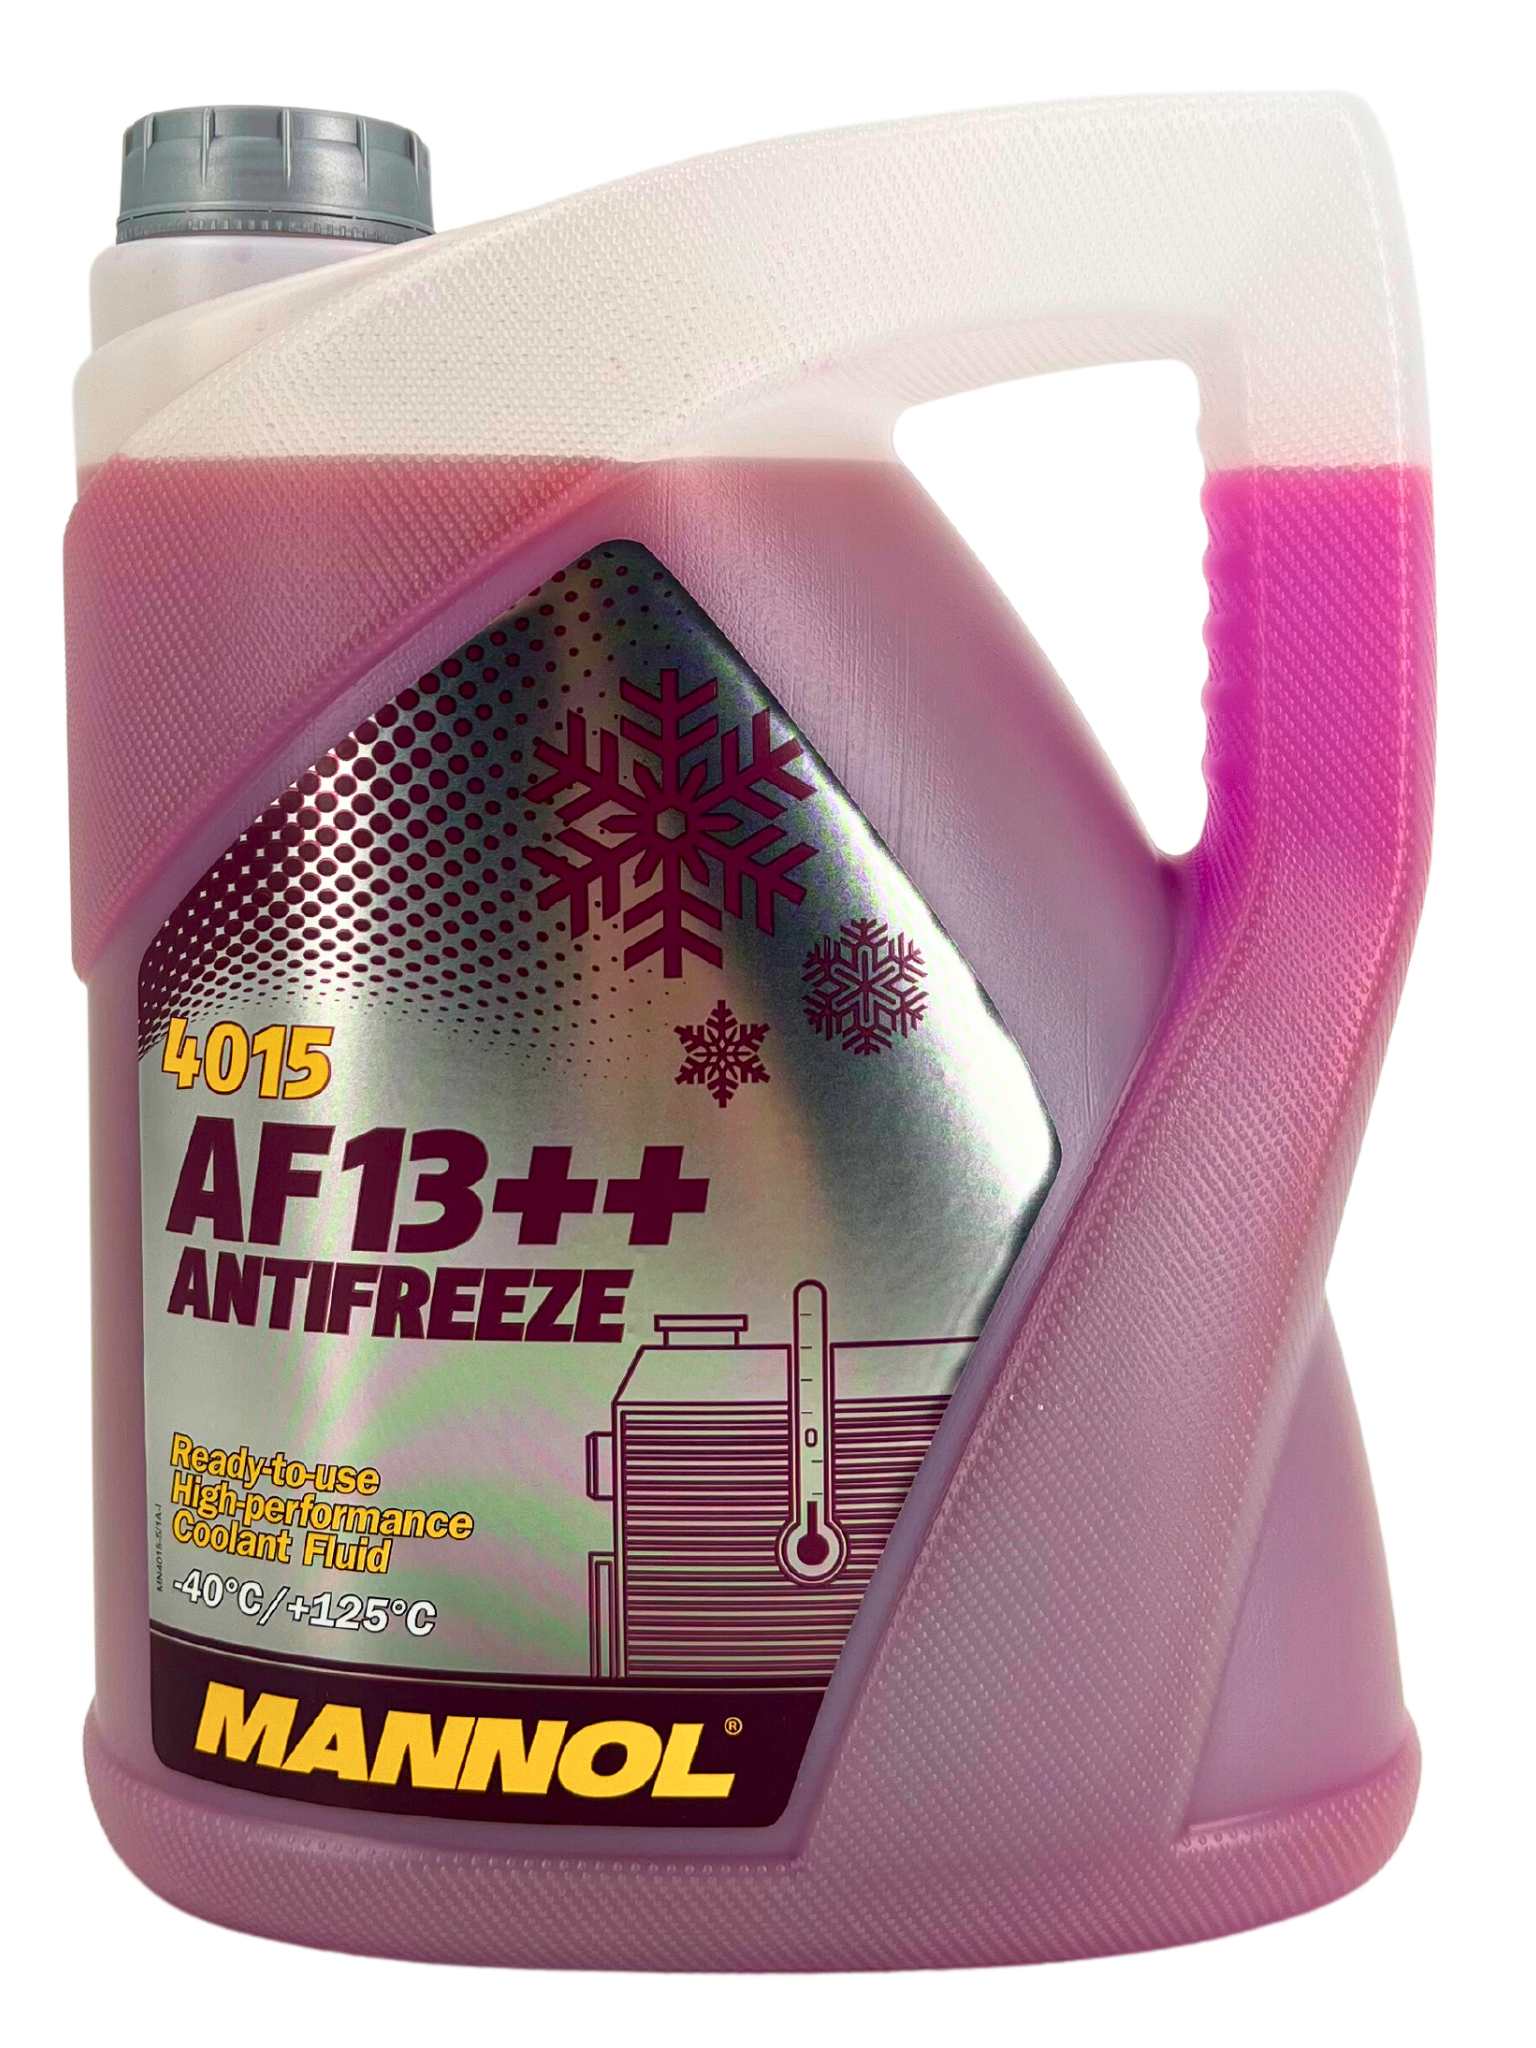 Mannol Antifreeze Kühlerfrostschutz AF13++ (-40 °C) 5 Liter